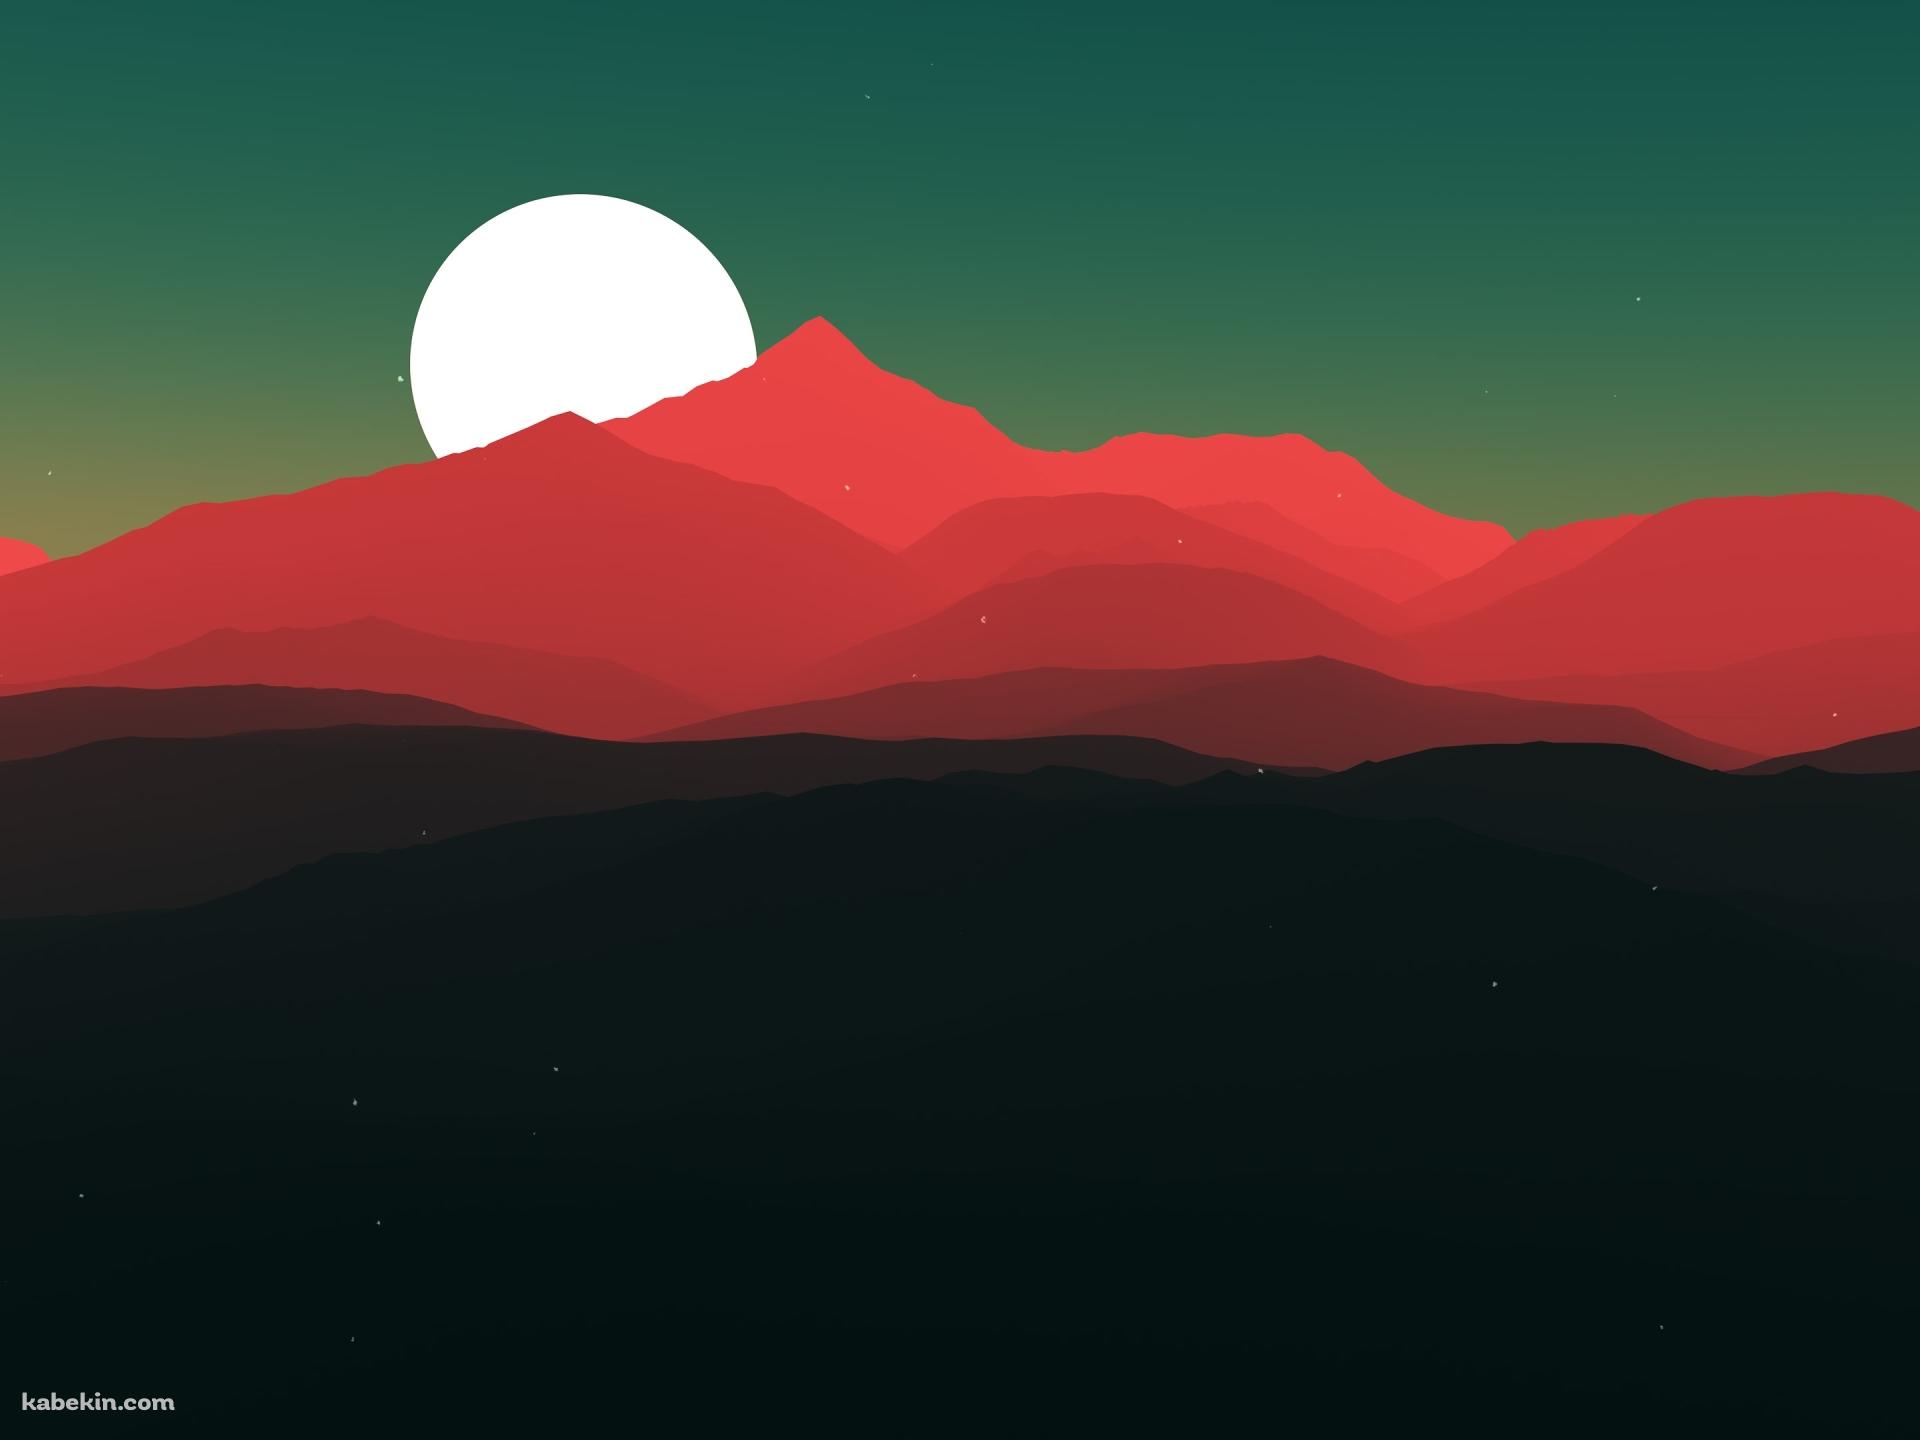 満月と赤い山の壁紙(1920px x 1440px) 高画質 PC・デスクトップ用